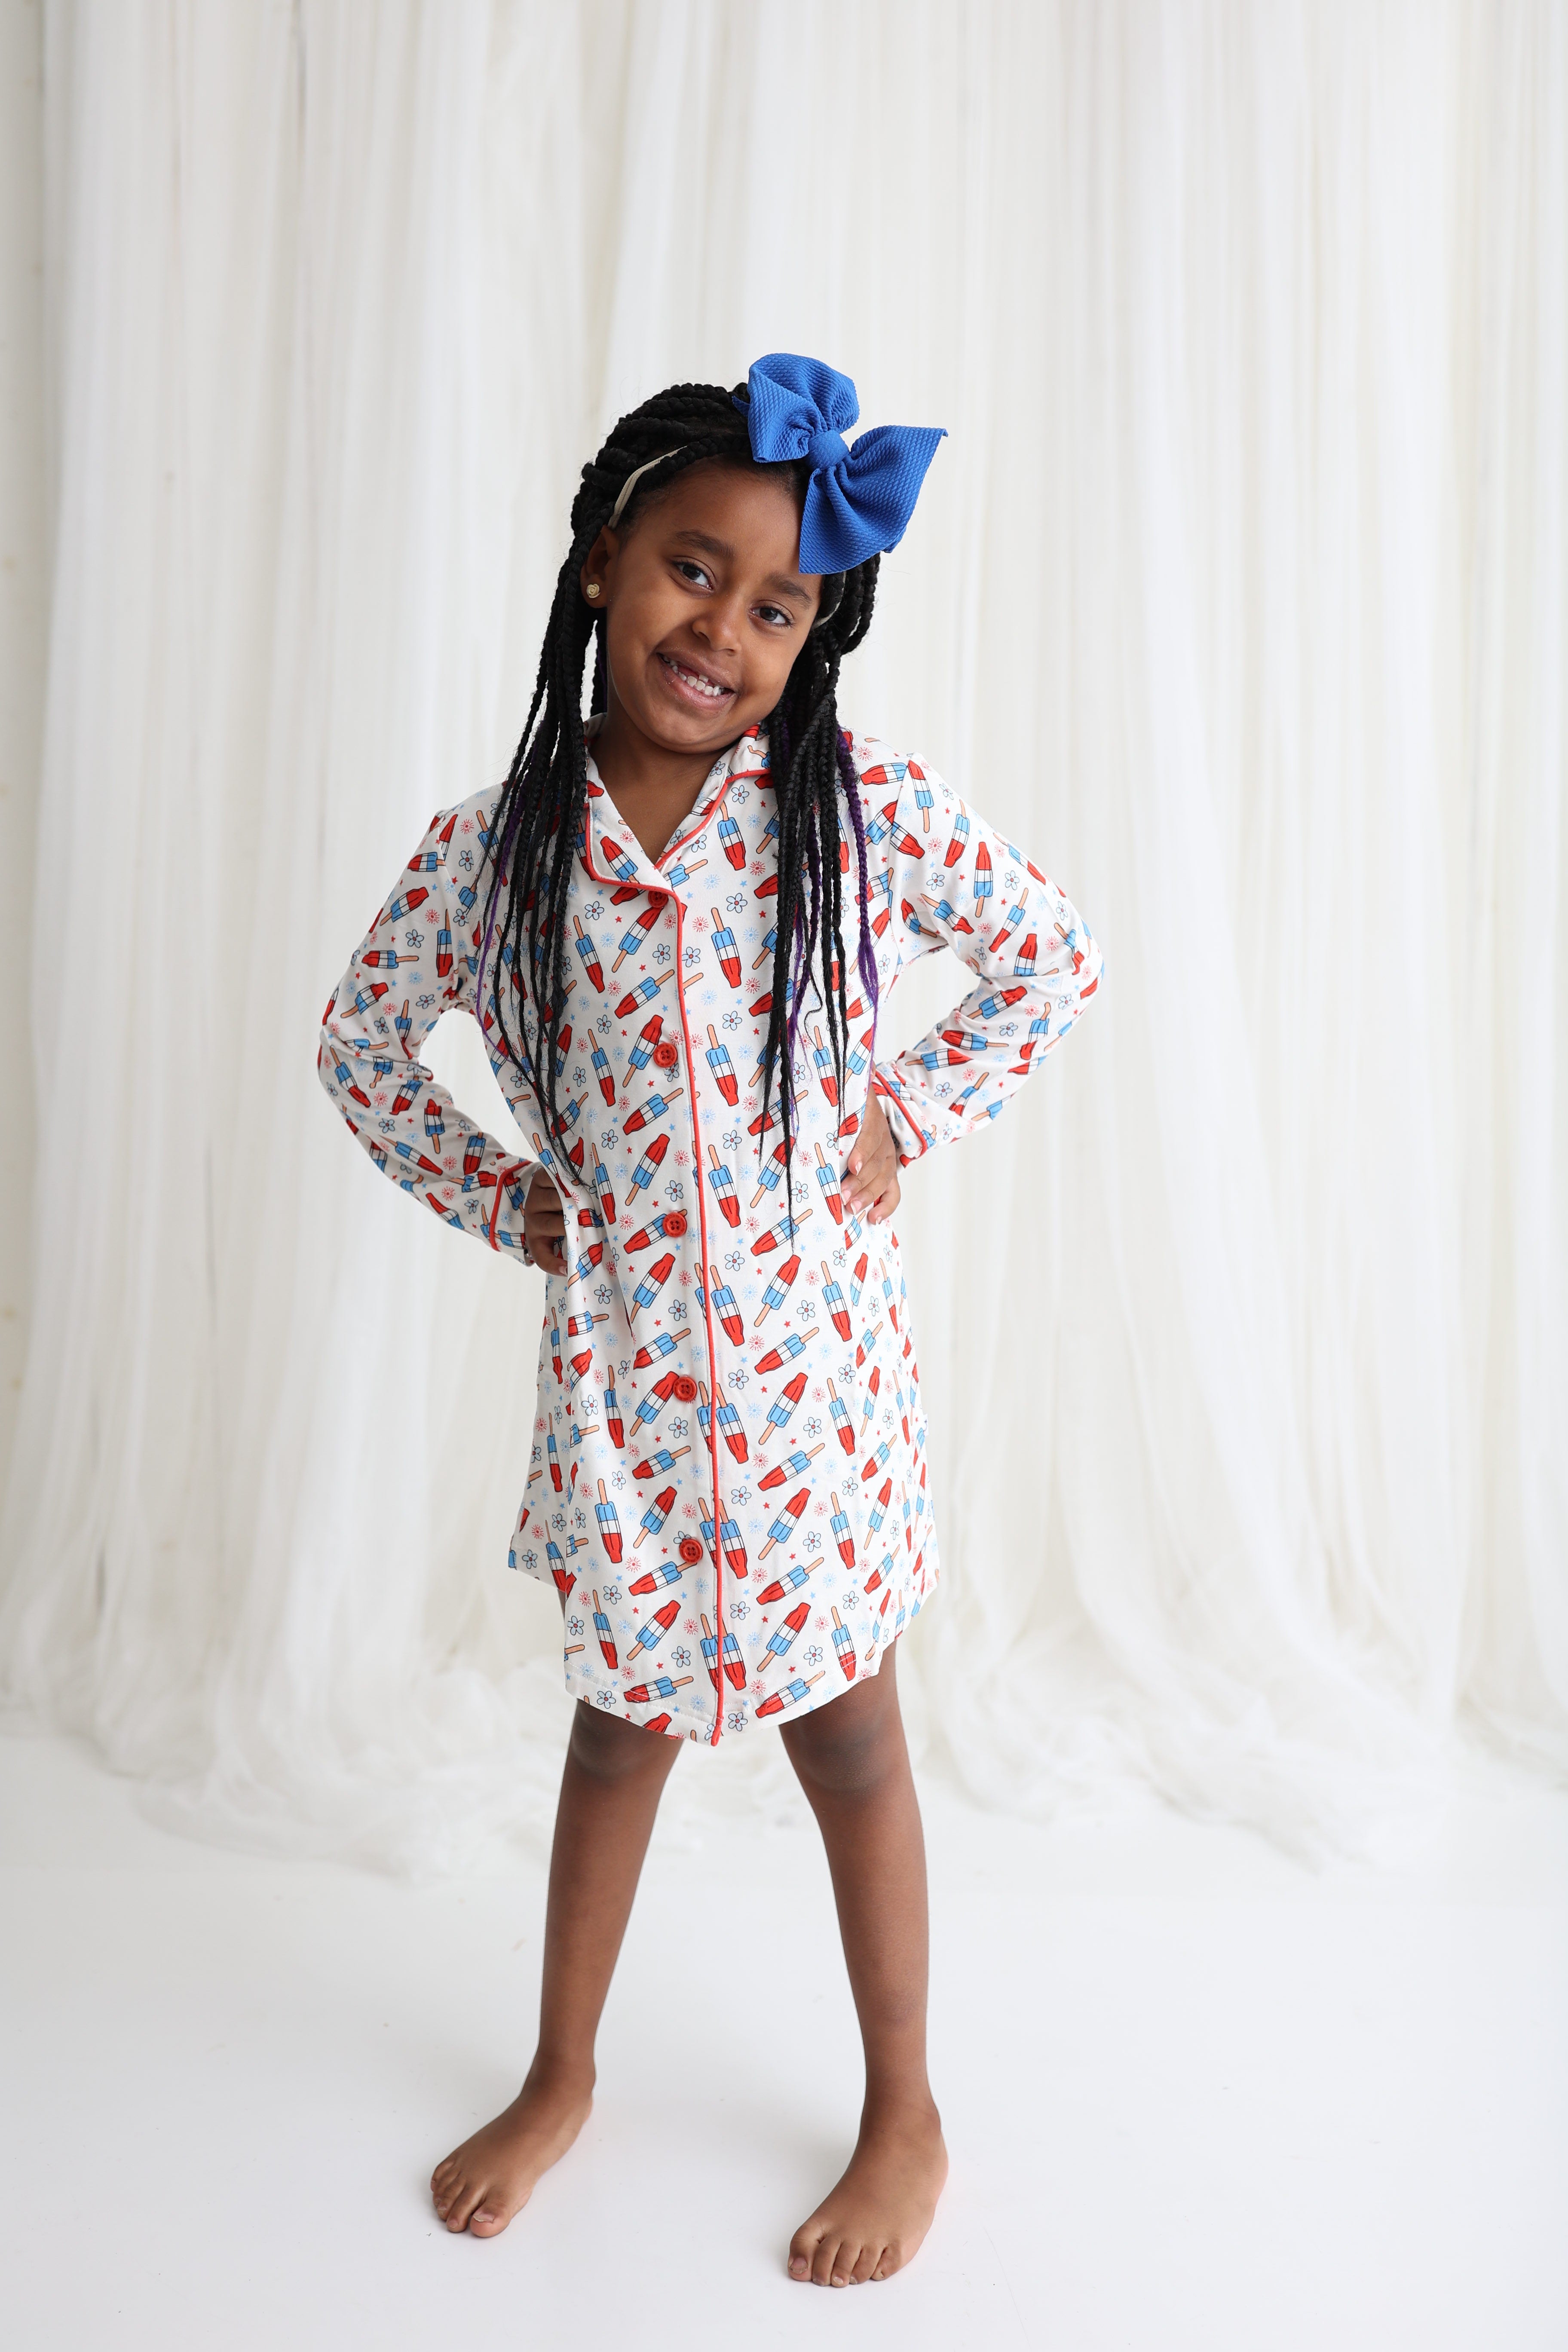 Little Miss Firecracker Girl's Dream Gown